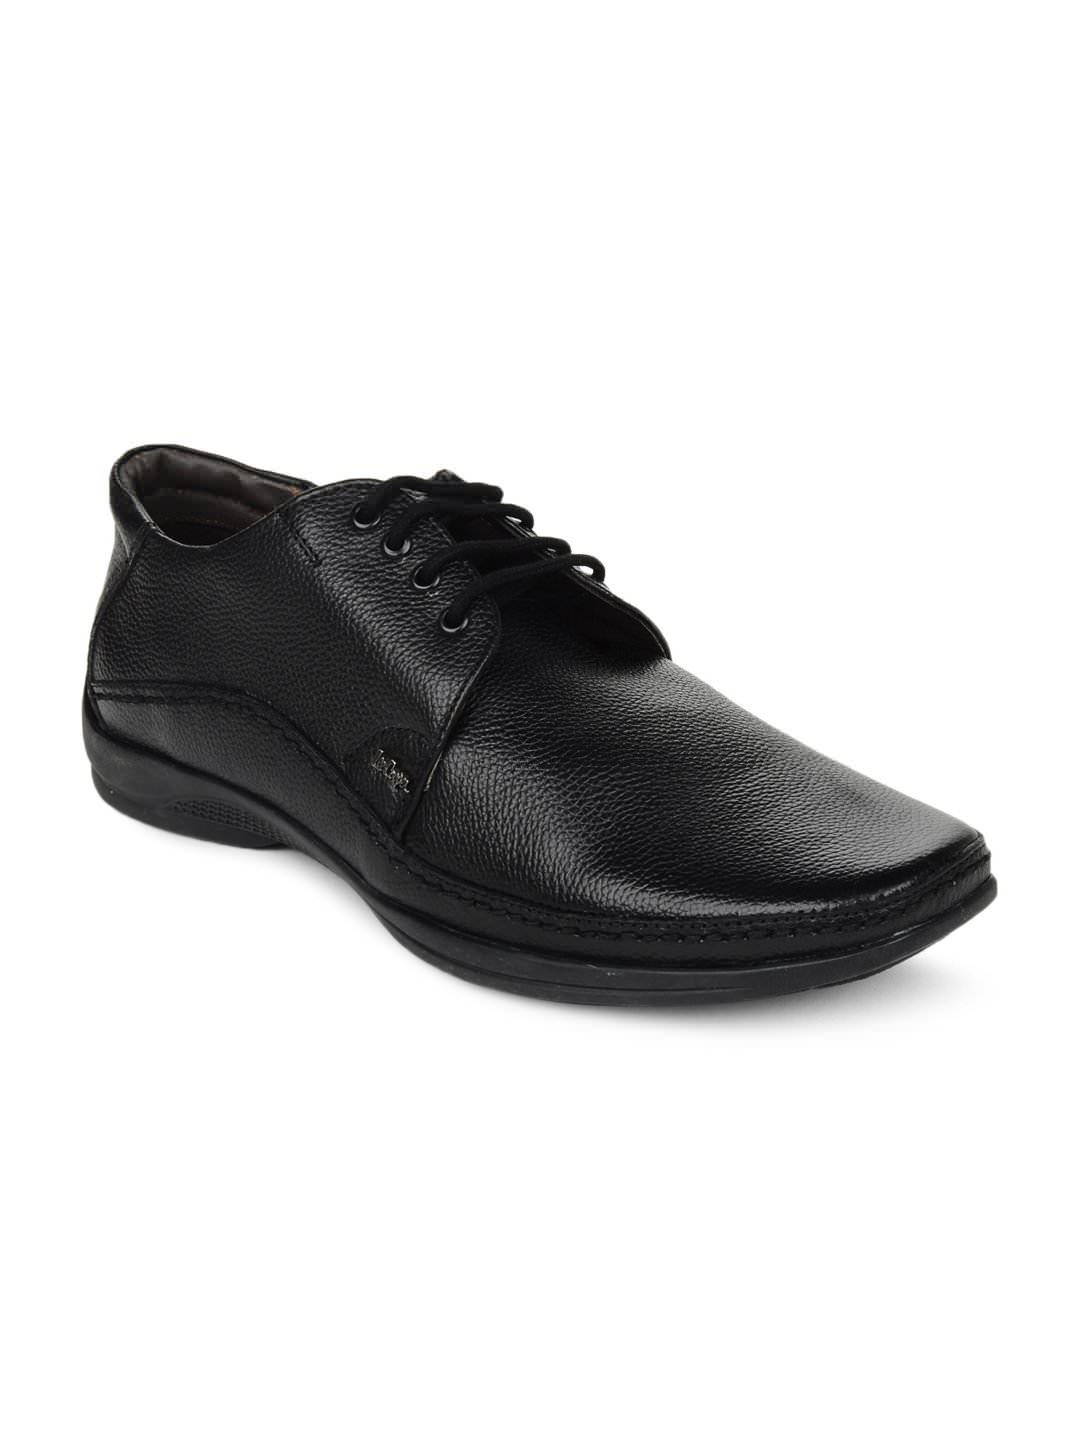 Online Lee Cooper Men's Black Formal Shoes (Option 14) Prices ...